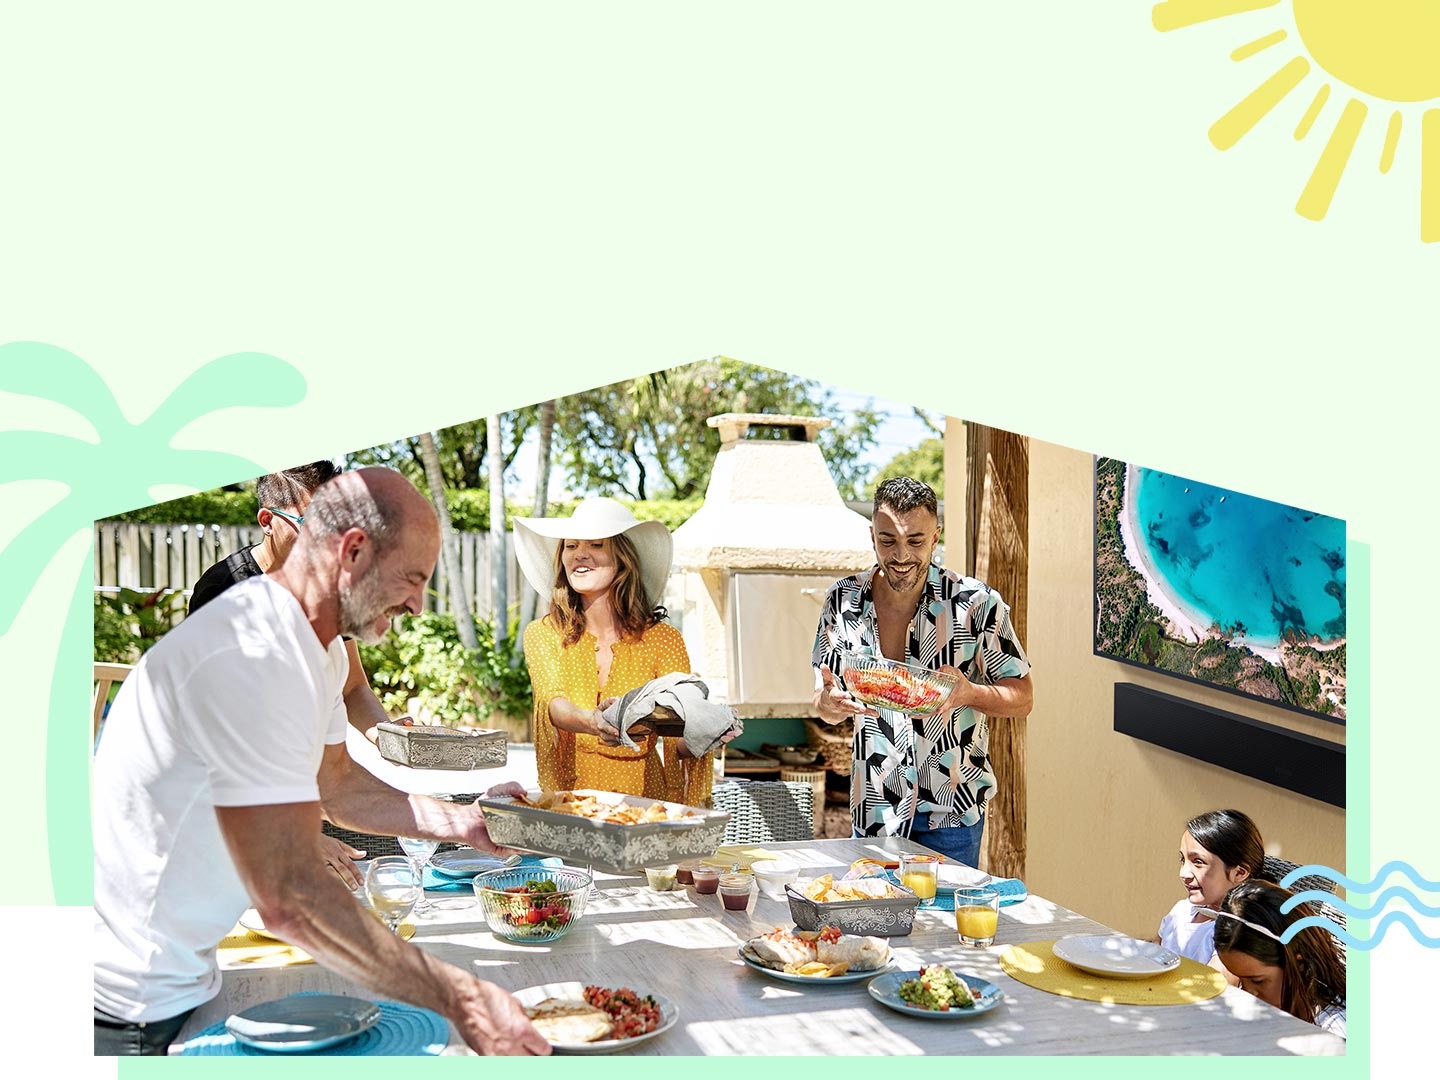 Los miembros de la familia disfrutan del verano y preparan una mesa con comida bajo una gran pérgola en el jardín.The Terrace y la Barra de Sonido reproducen un entretenido video de fondo.